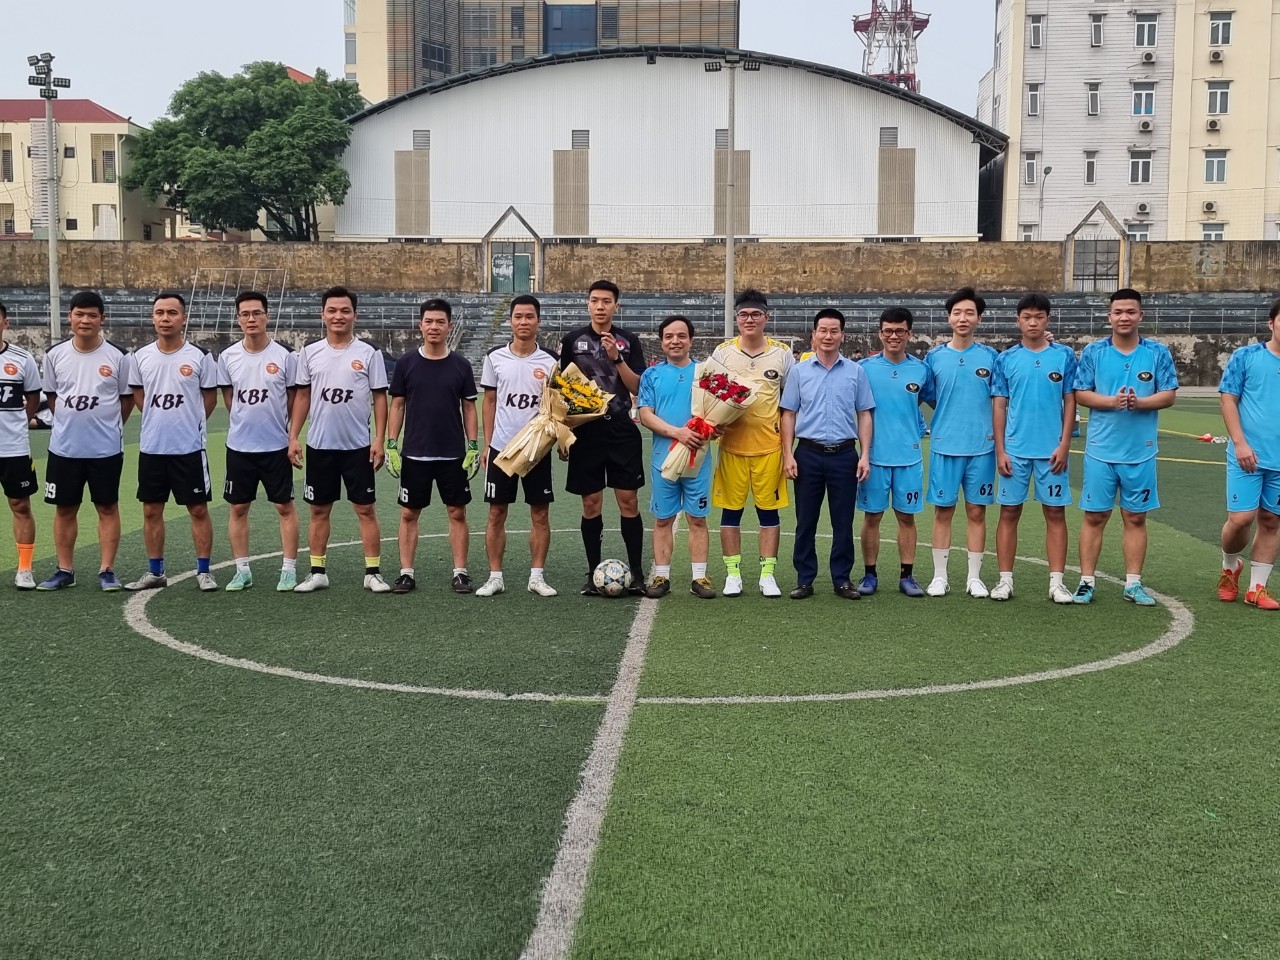 Giao lưu đá bóng với đội KBF thành phố Bắc Ninh